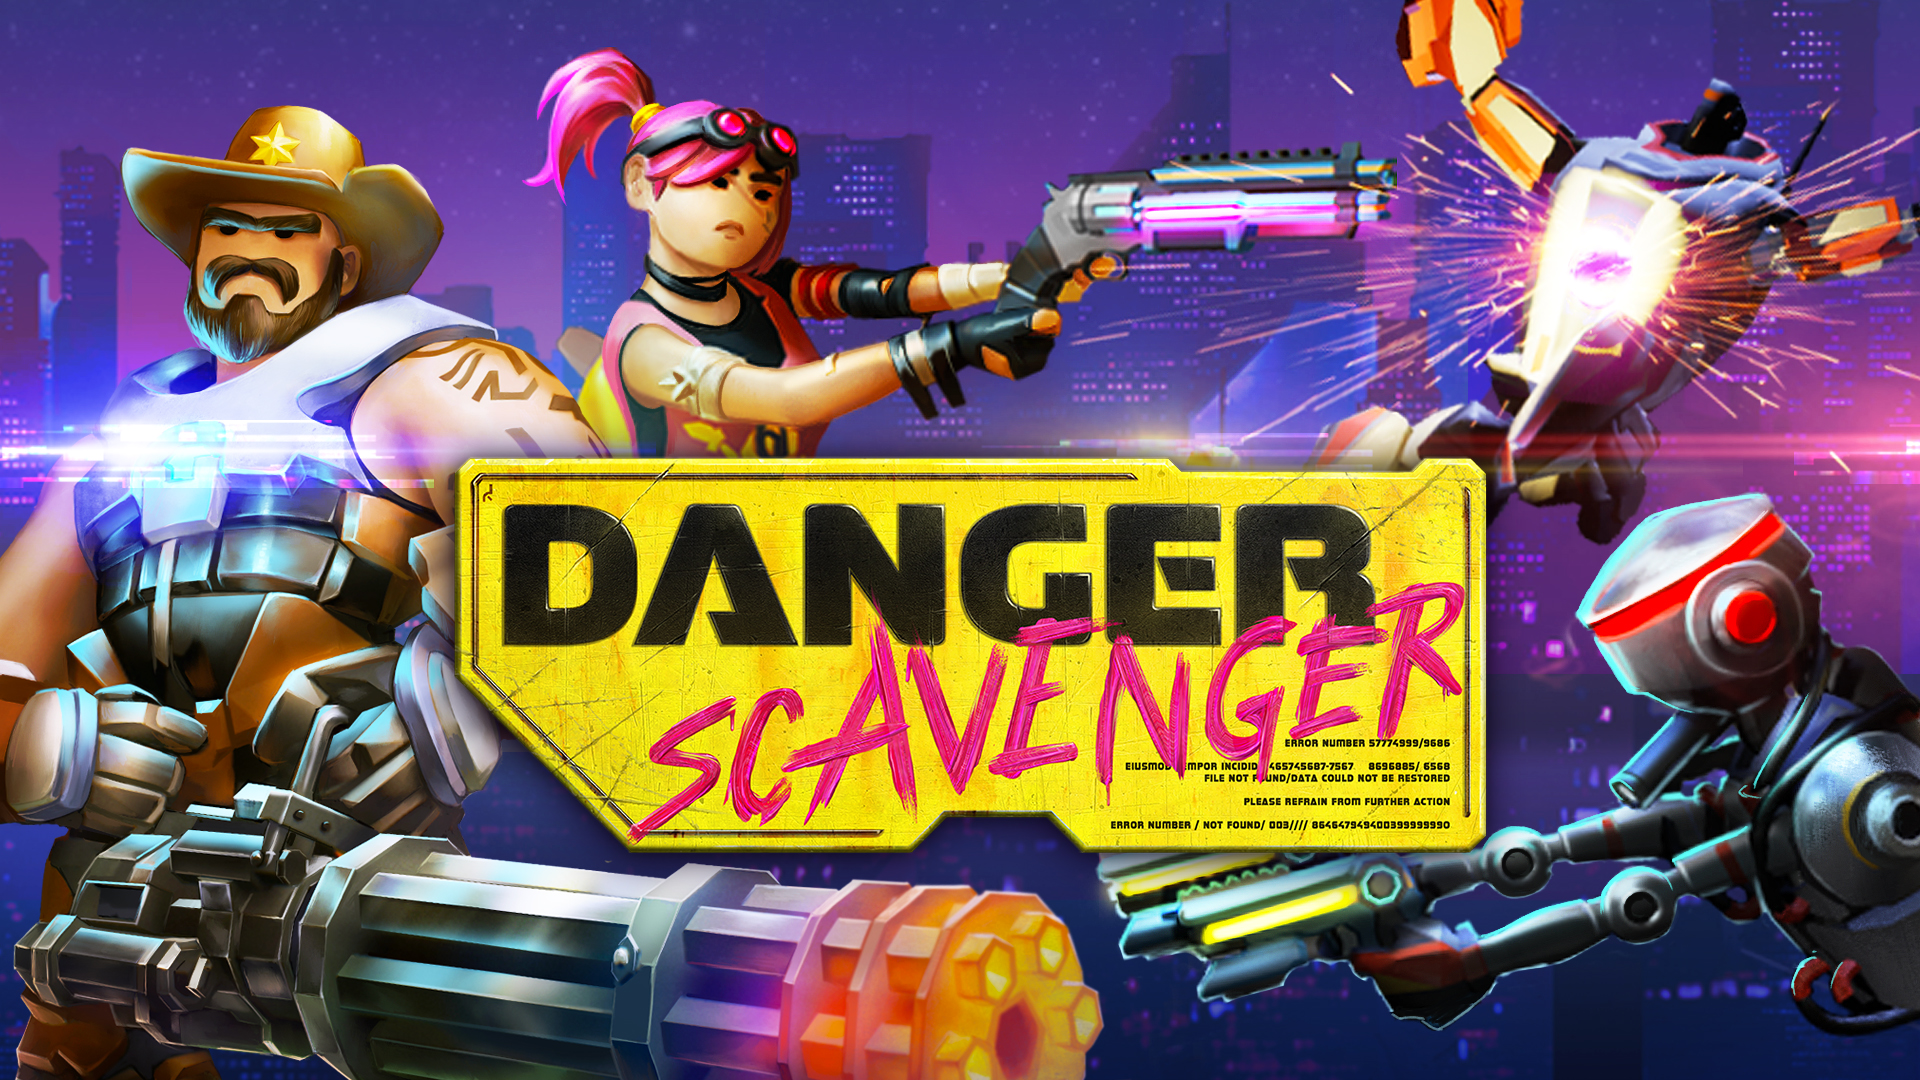 Danger Scavenger download the last version for apple